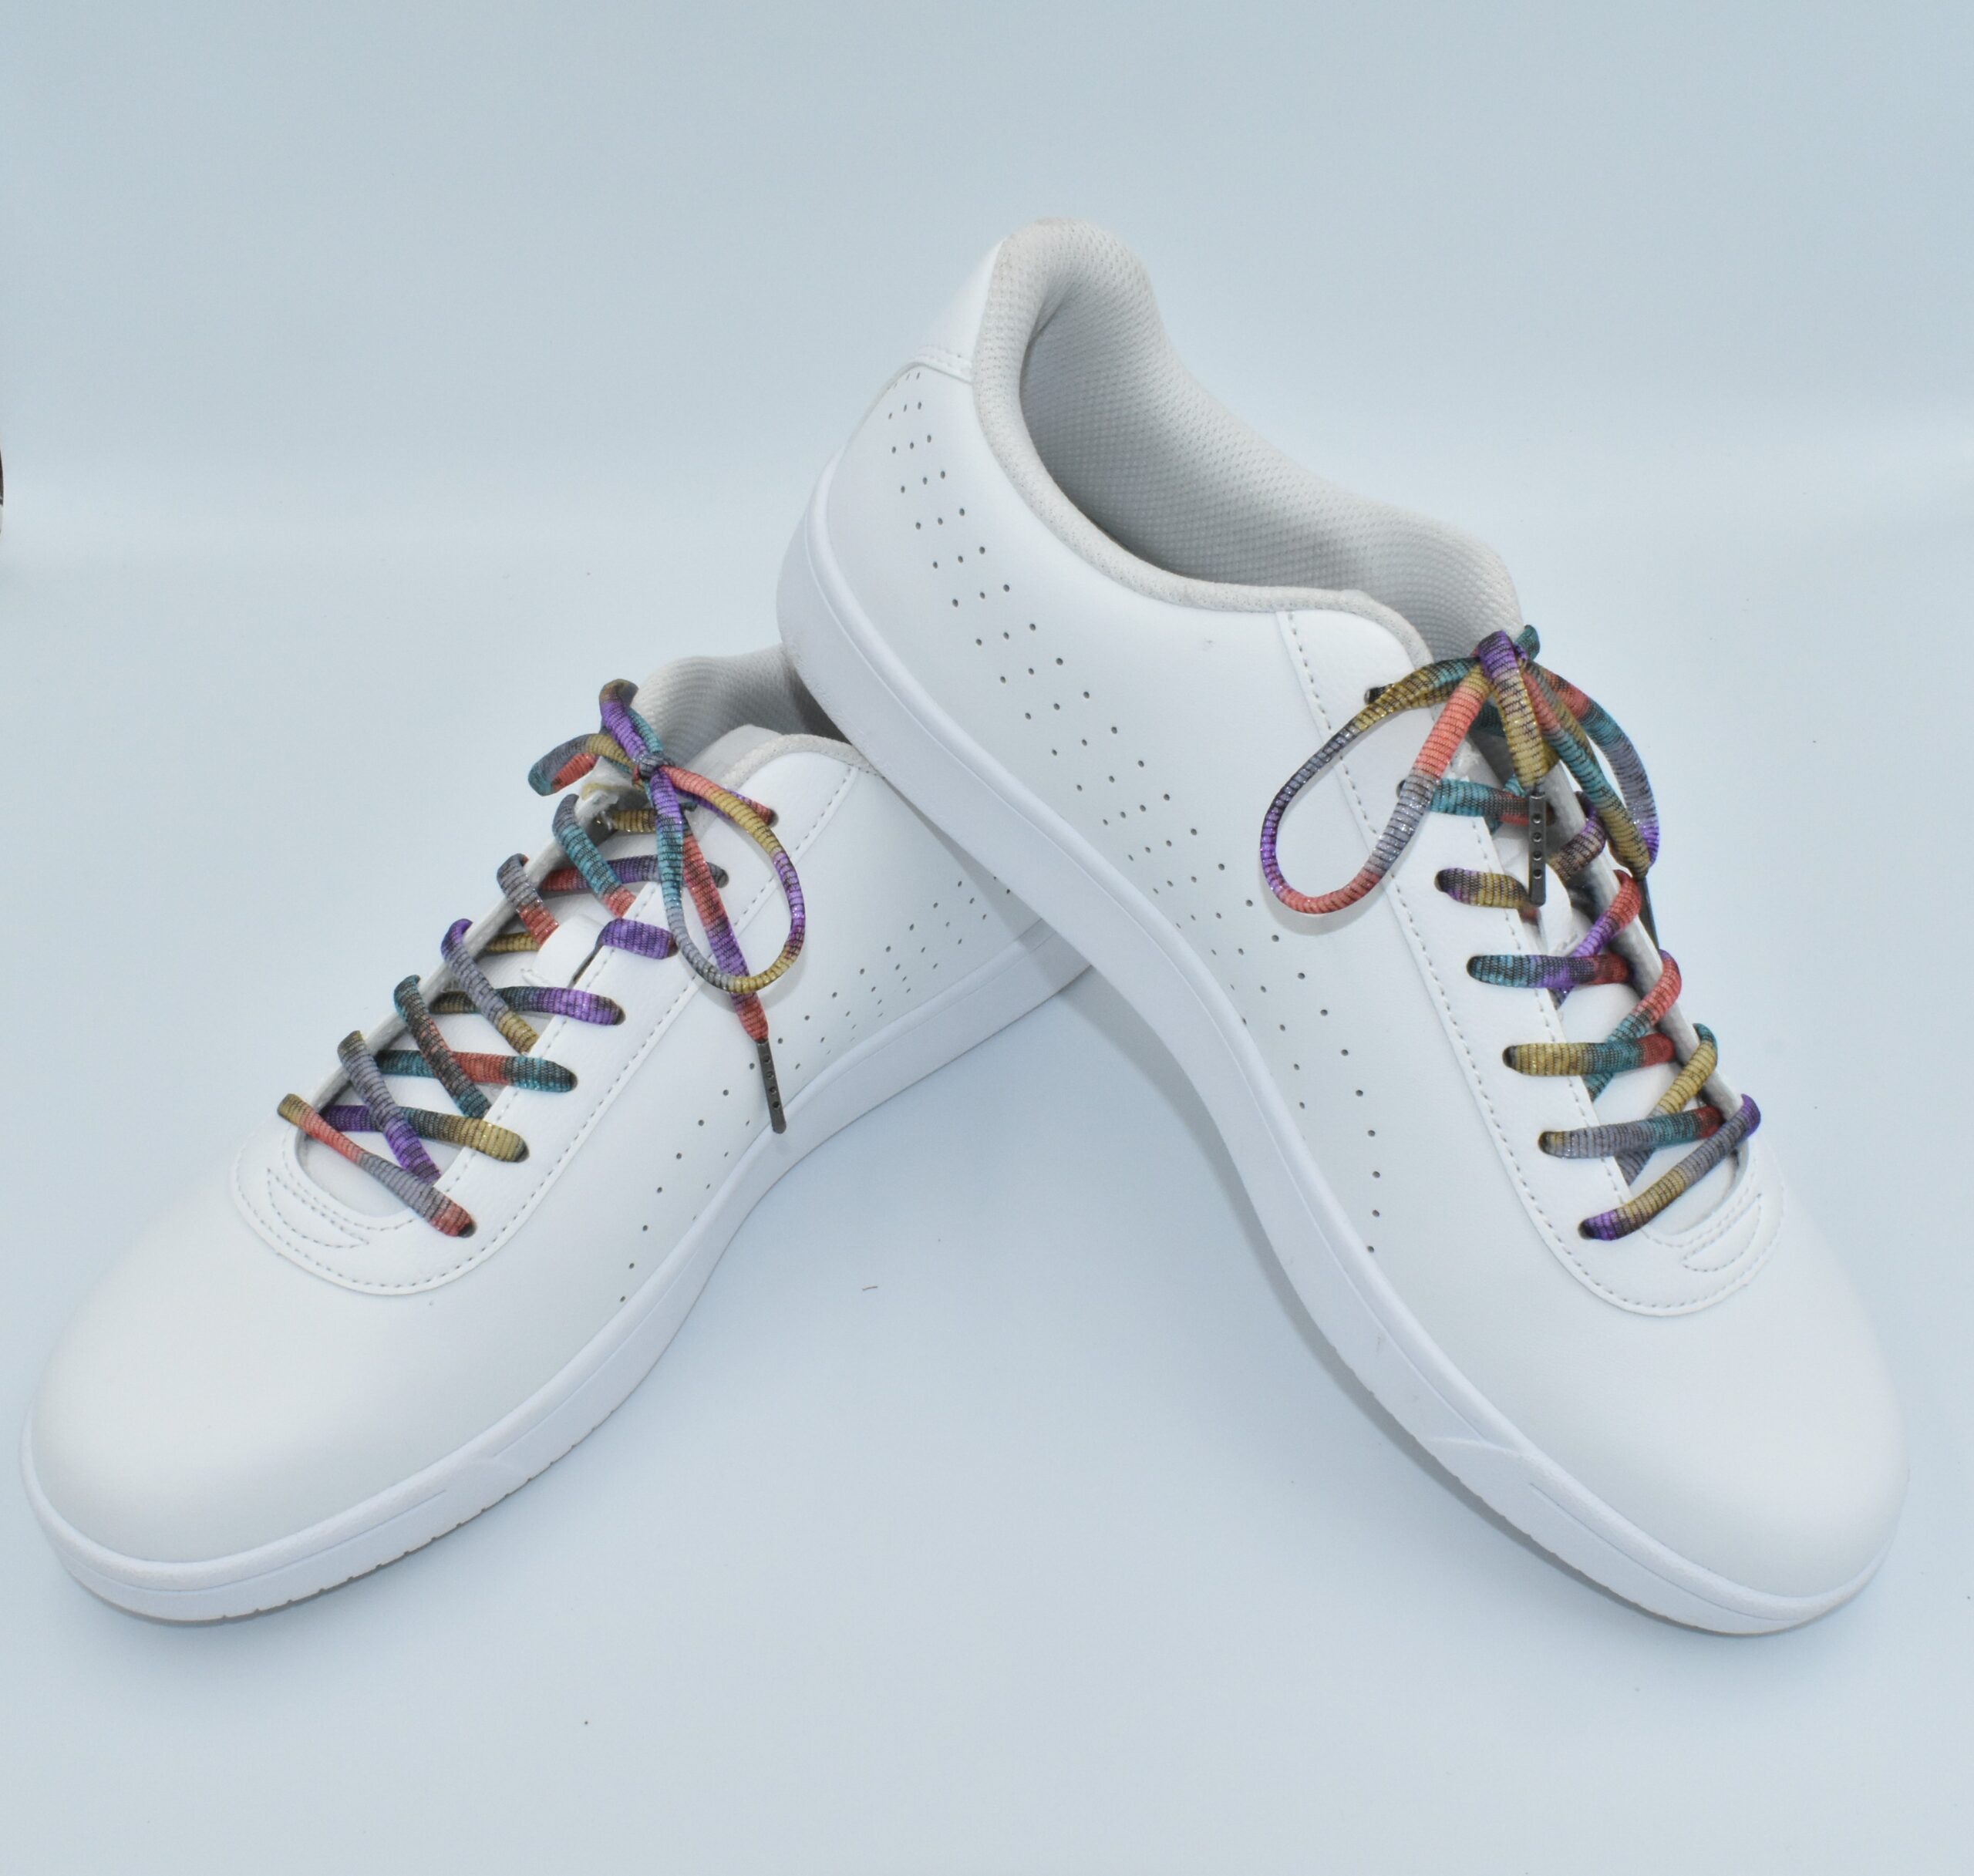 染色工場が作った靴紐「RAINBOW SHOELACE」(ステンドグラス) レインボー株式会社